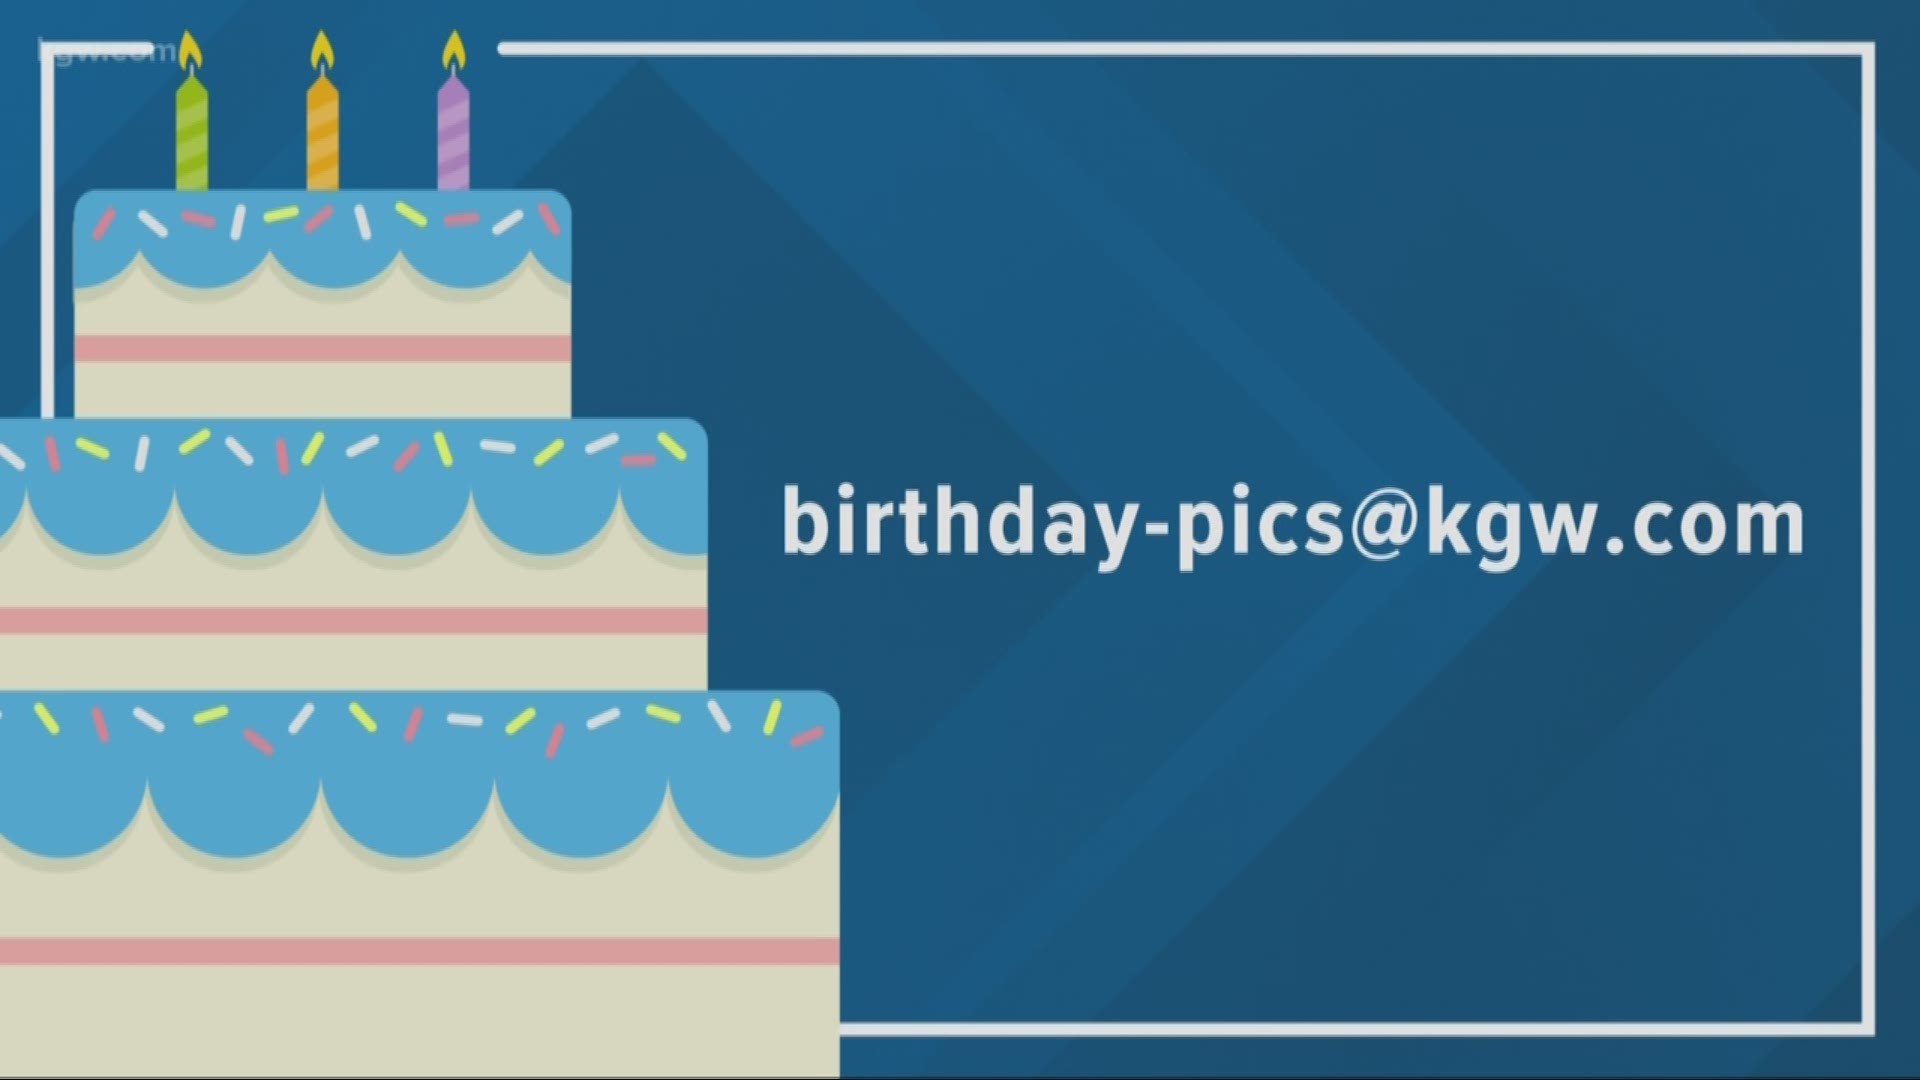 KGW viewer birthdays: 12-6-18